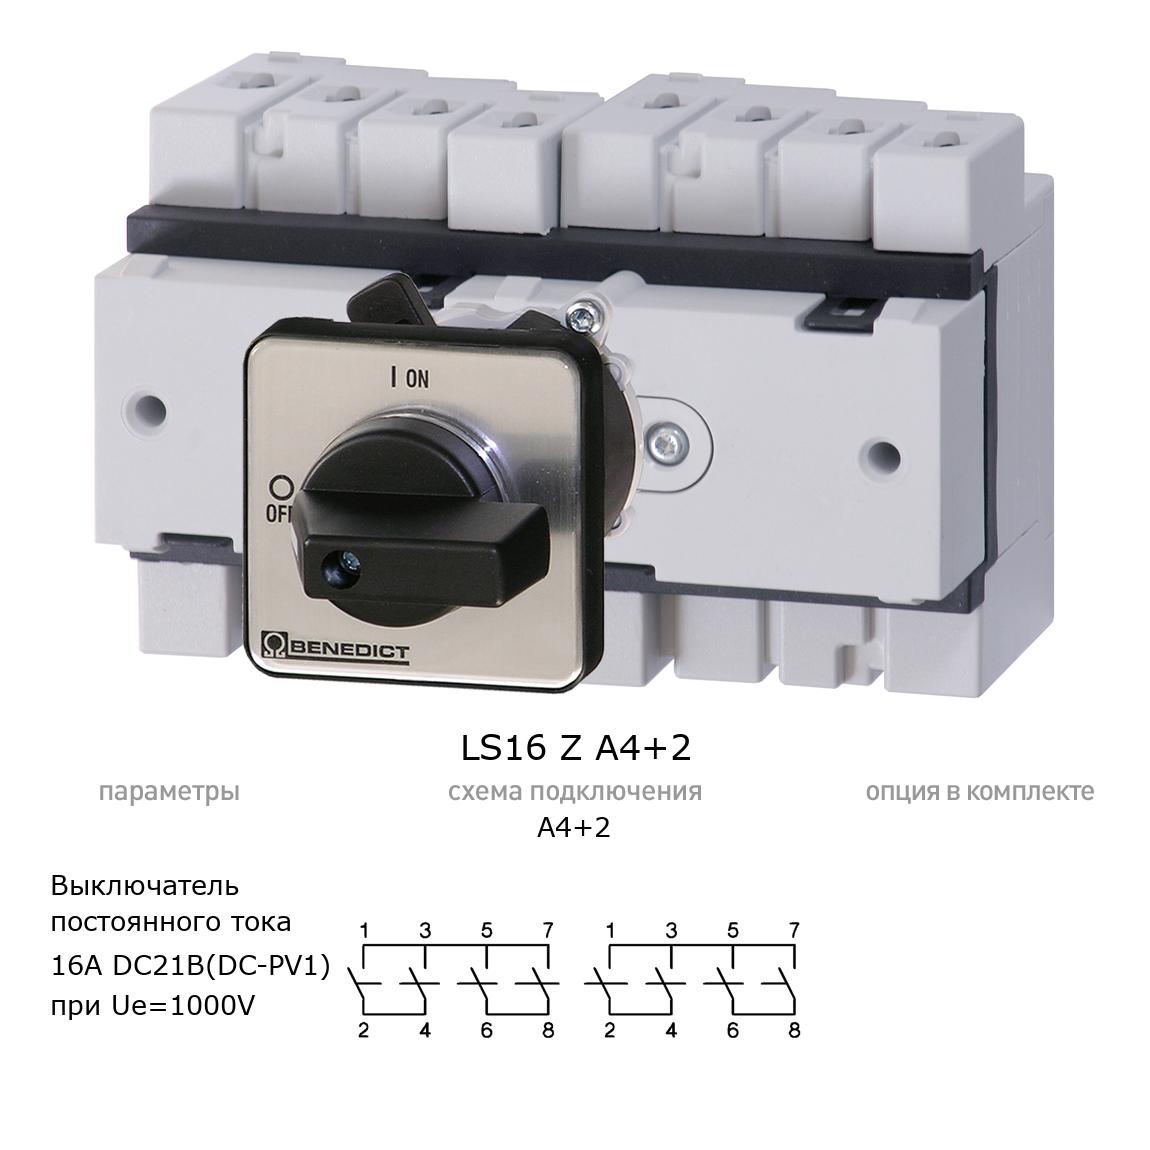 Кулачковый переключатель для постоянного тока (DC) LS16 Z A4+2 BENEDICT